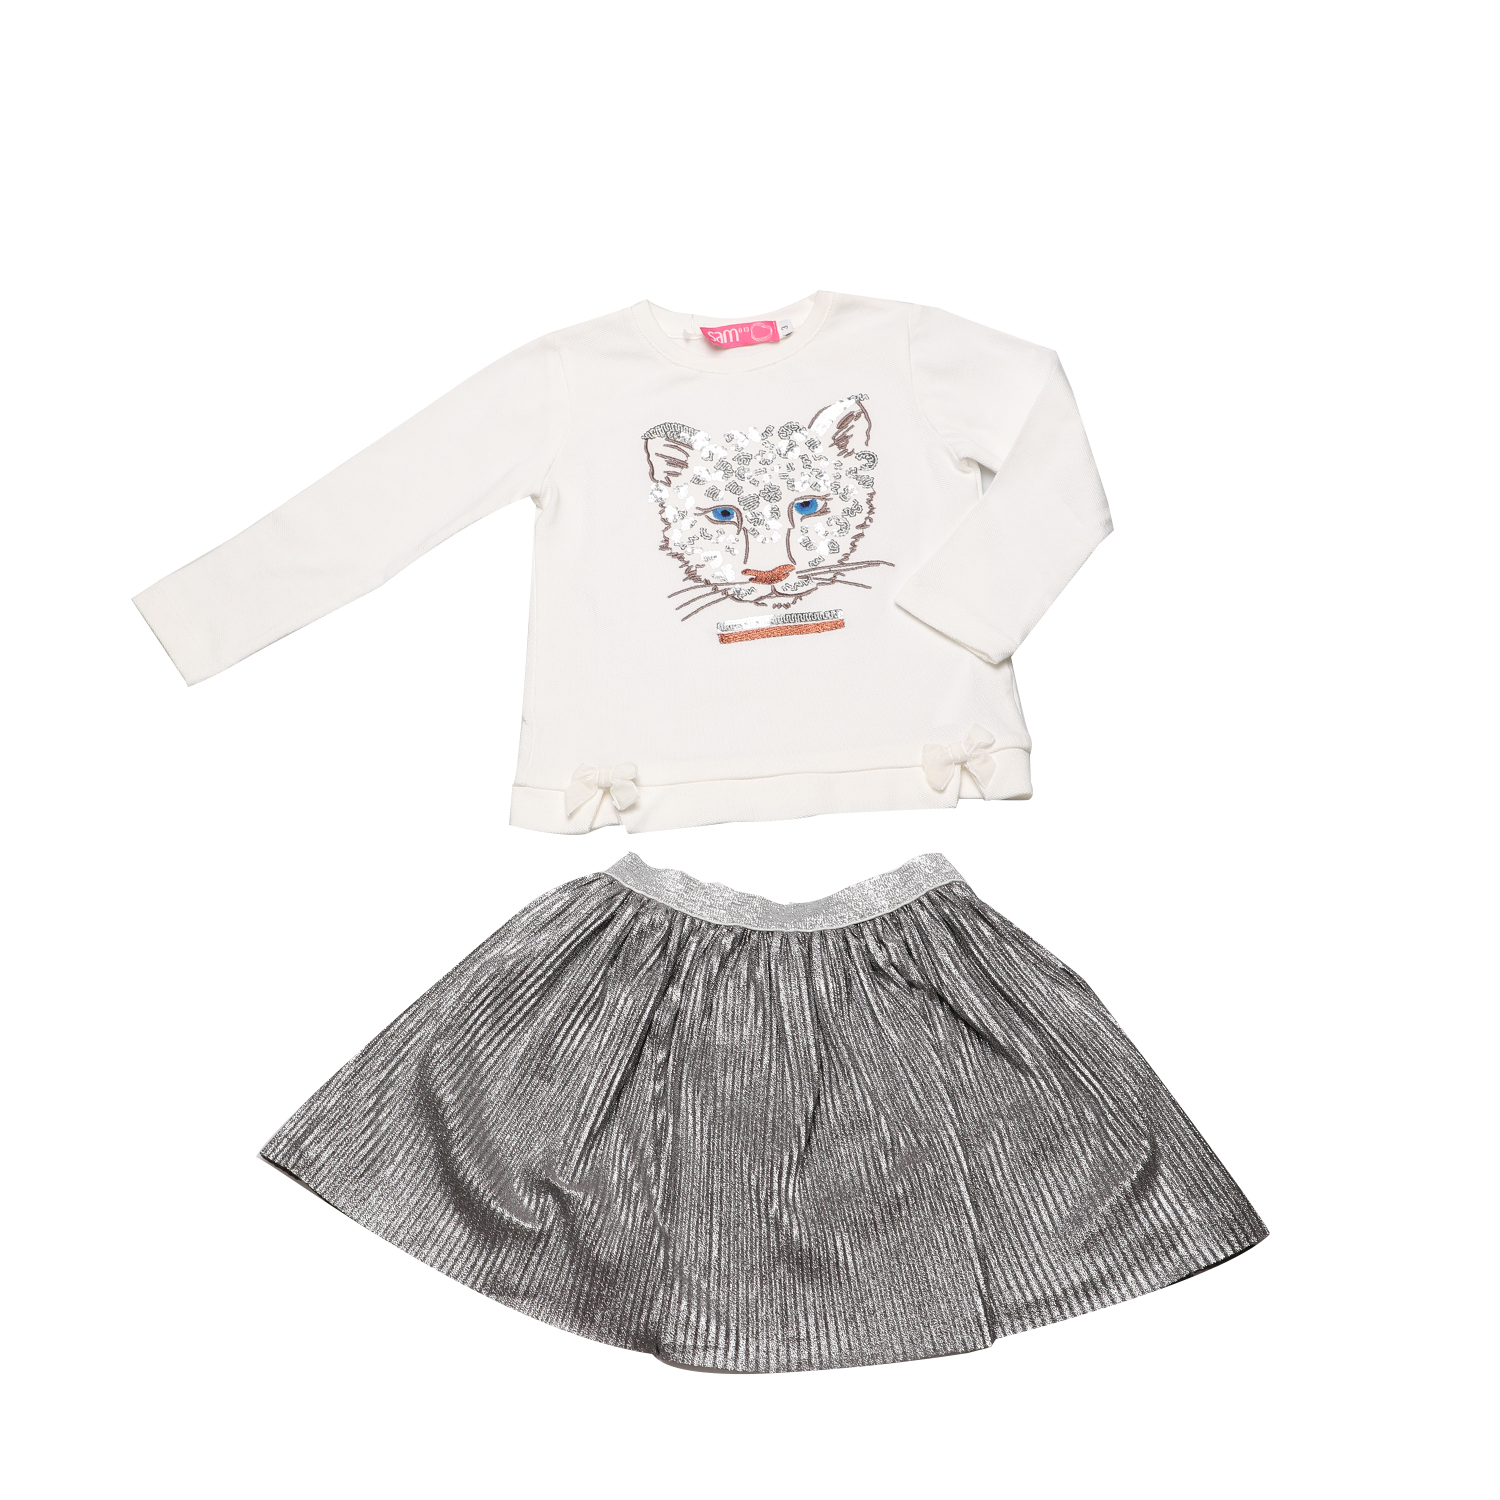 Παιδικά/Girls/Ρούχα/Σετ SAM 0-13 - Παιδικό σετ από μπλούζα και φούστα SAM 0-13 εκρού ασημί